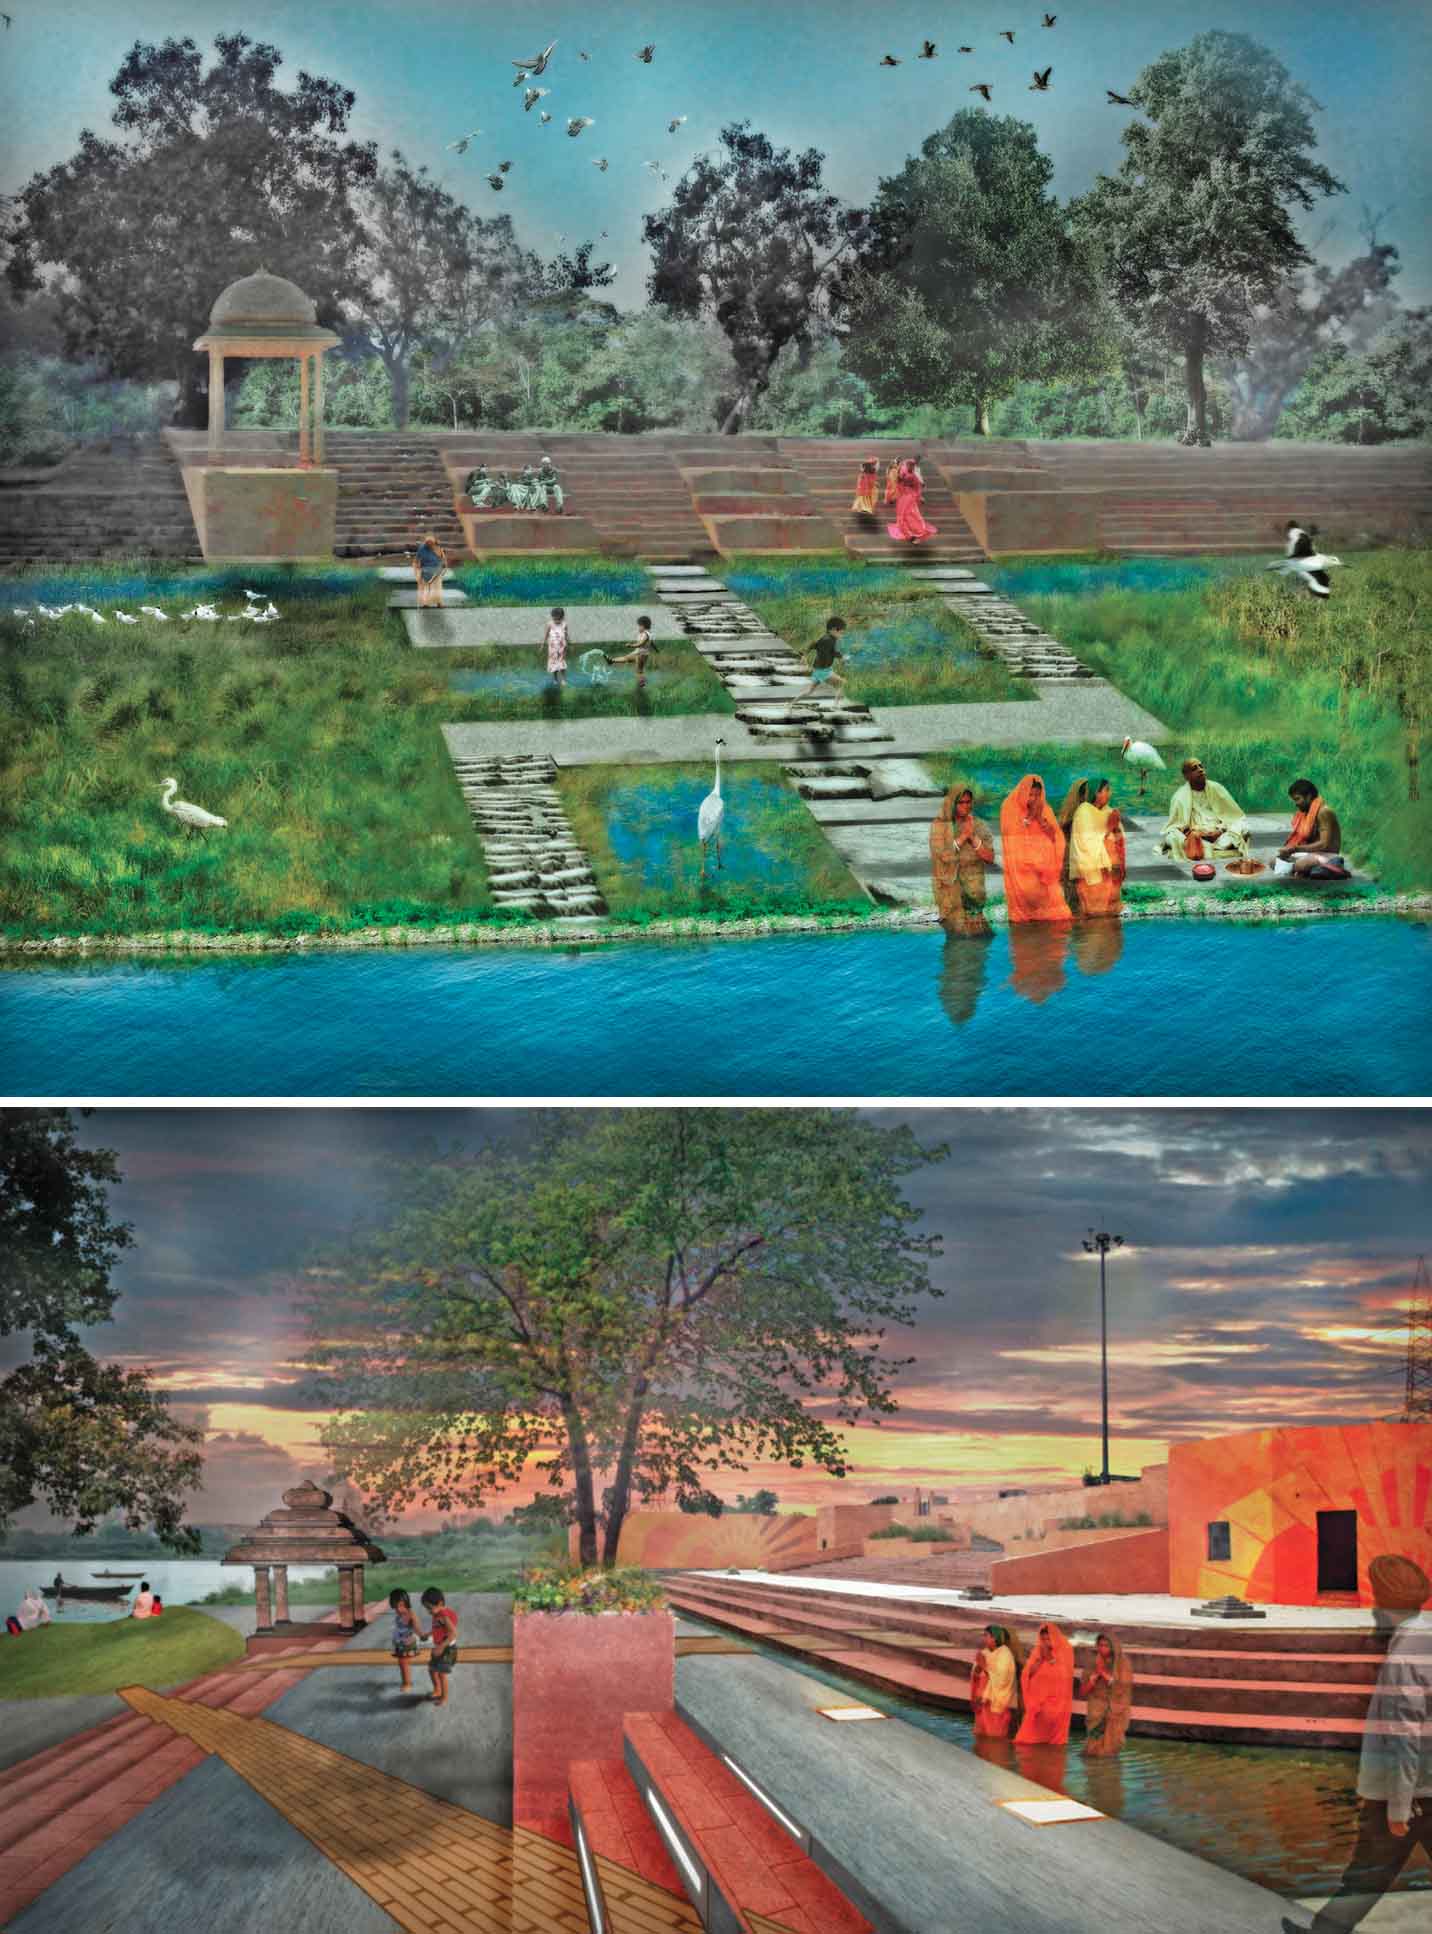 ghats-rivers-life-nature culture-delhi-concept-view-designing-public-access-riverbank